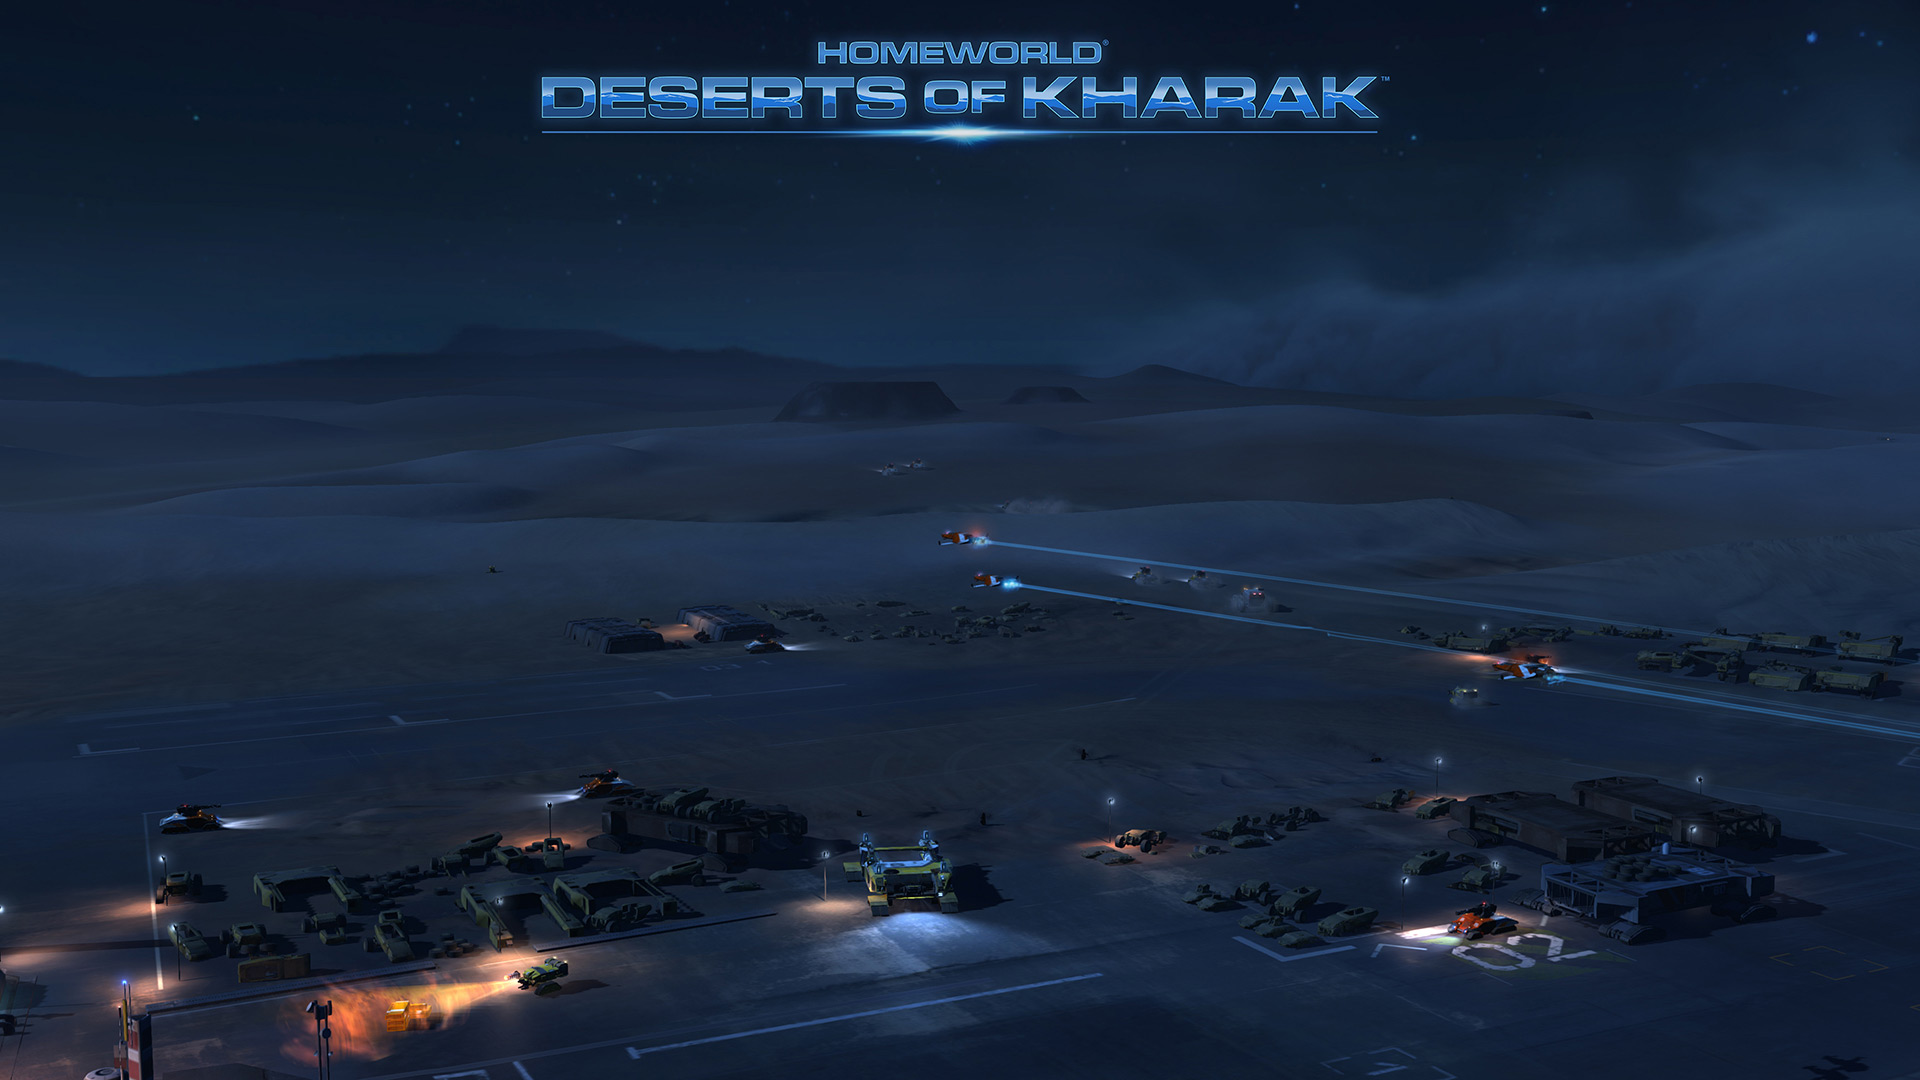 Homeworld desert of kharak steam фото 104